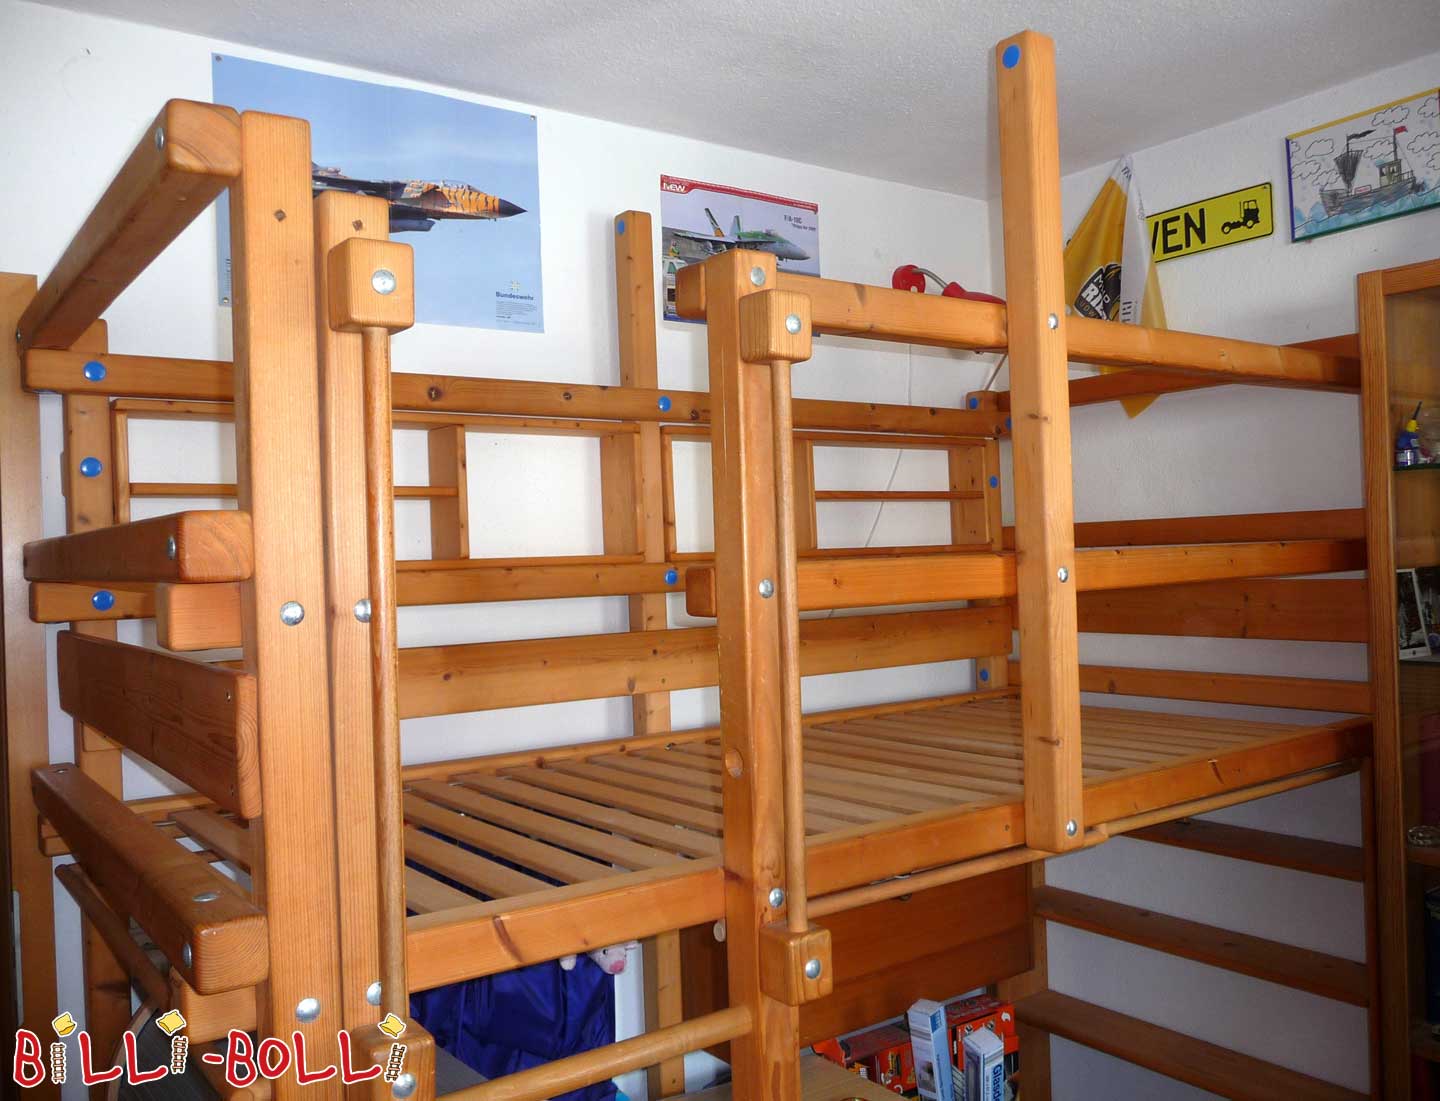 Κρεβάτι σοφίτας, μεγαλώνει μαζί με το παιδί, 90 x 200 cm, λαδωμένη ερυθρελάτη στο χρώμα του μελιού (Κατηγορία: Χρησιμοποιείται κρεβάτι σοφίτας)